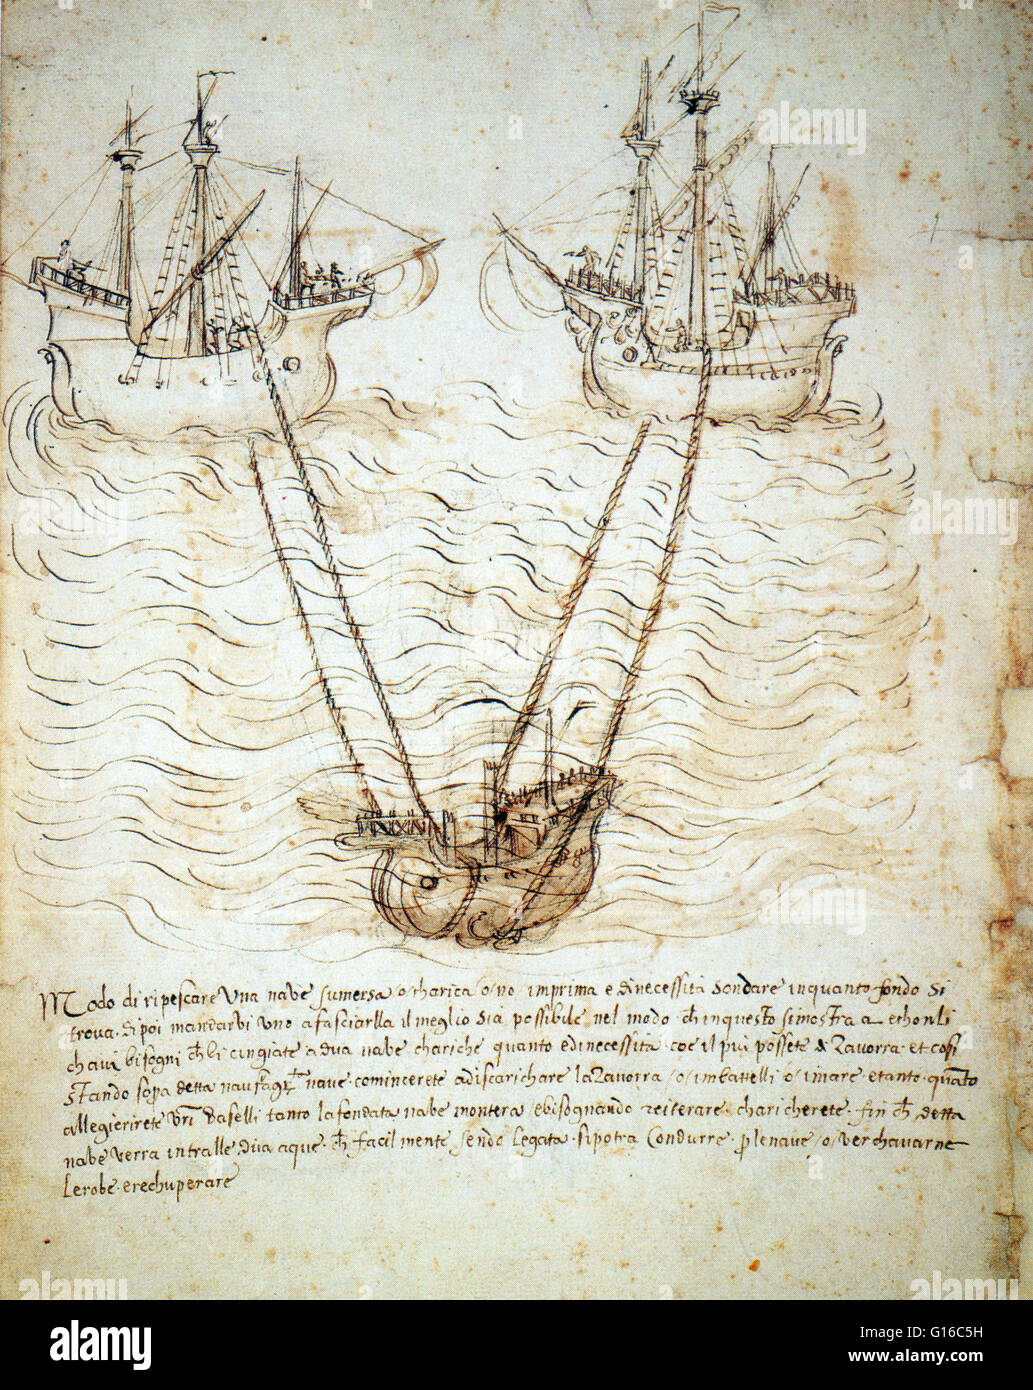 Erfindung von einem anonymen Sieneser Ingenieur entworfen zeigt eine Vorrichtung zum Anheben eines versunkenen Schiffes. Das versunkene Schiff ist mit Seilen an zwei schwimmende Schiffe beladen mit Vorschaltgerät gebunden. Das Vorschaltgerät ist dann über Bord geworfen. Zwischen dem Mittelalter und der Renaissance, Stockfoto